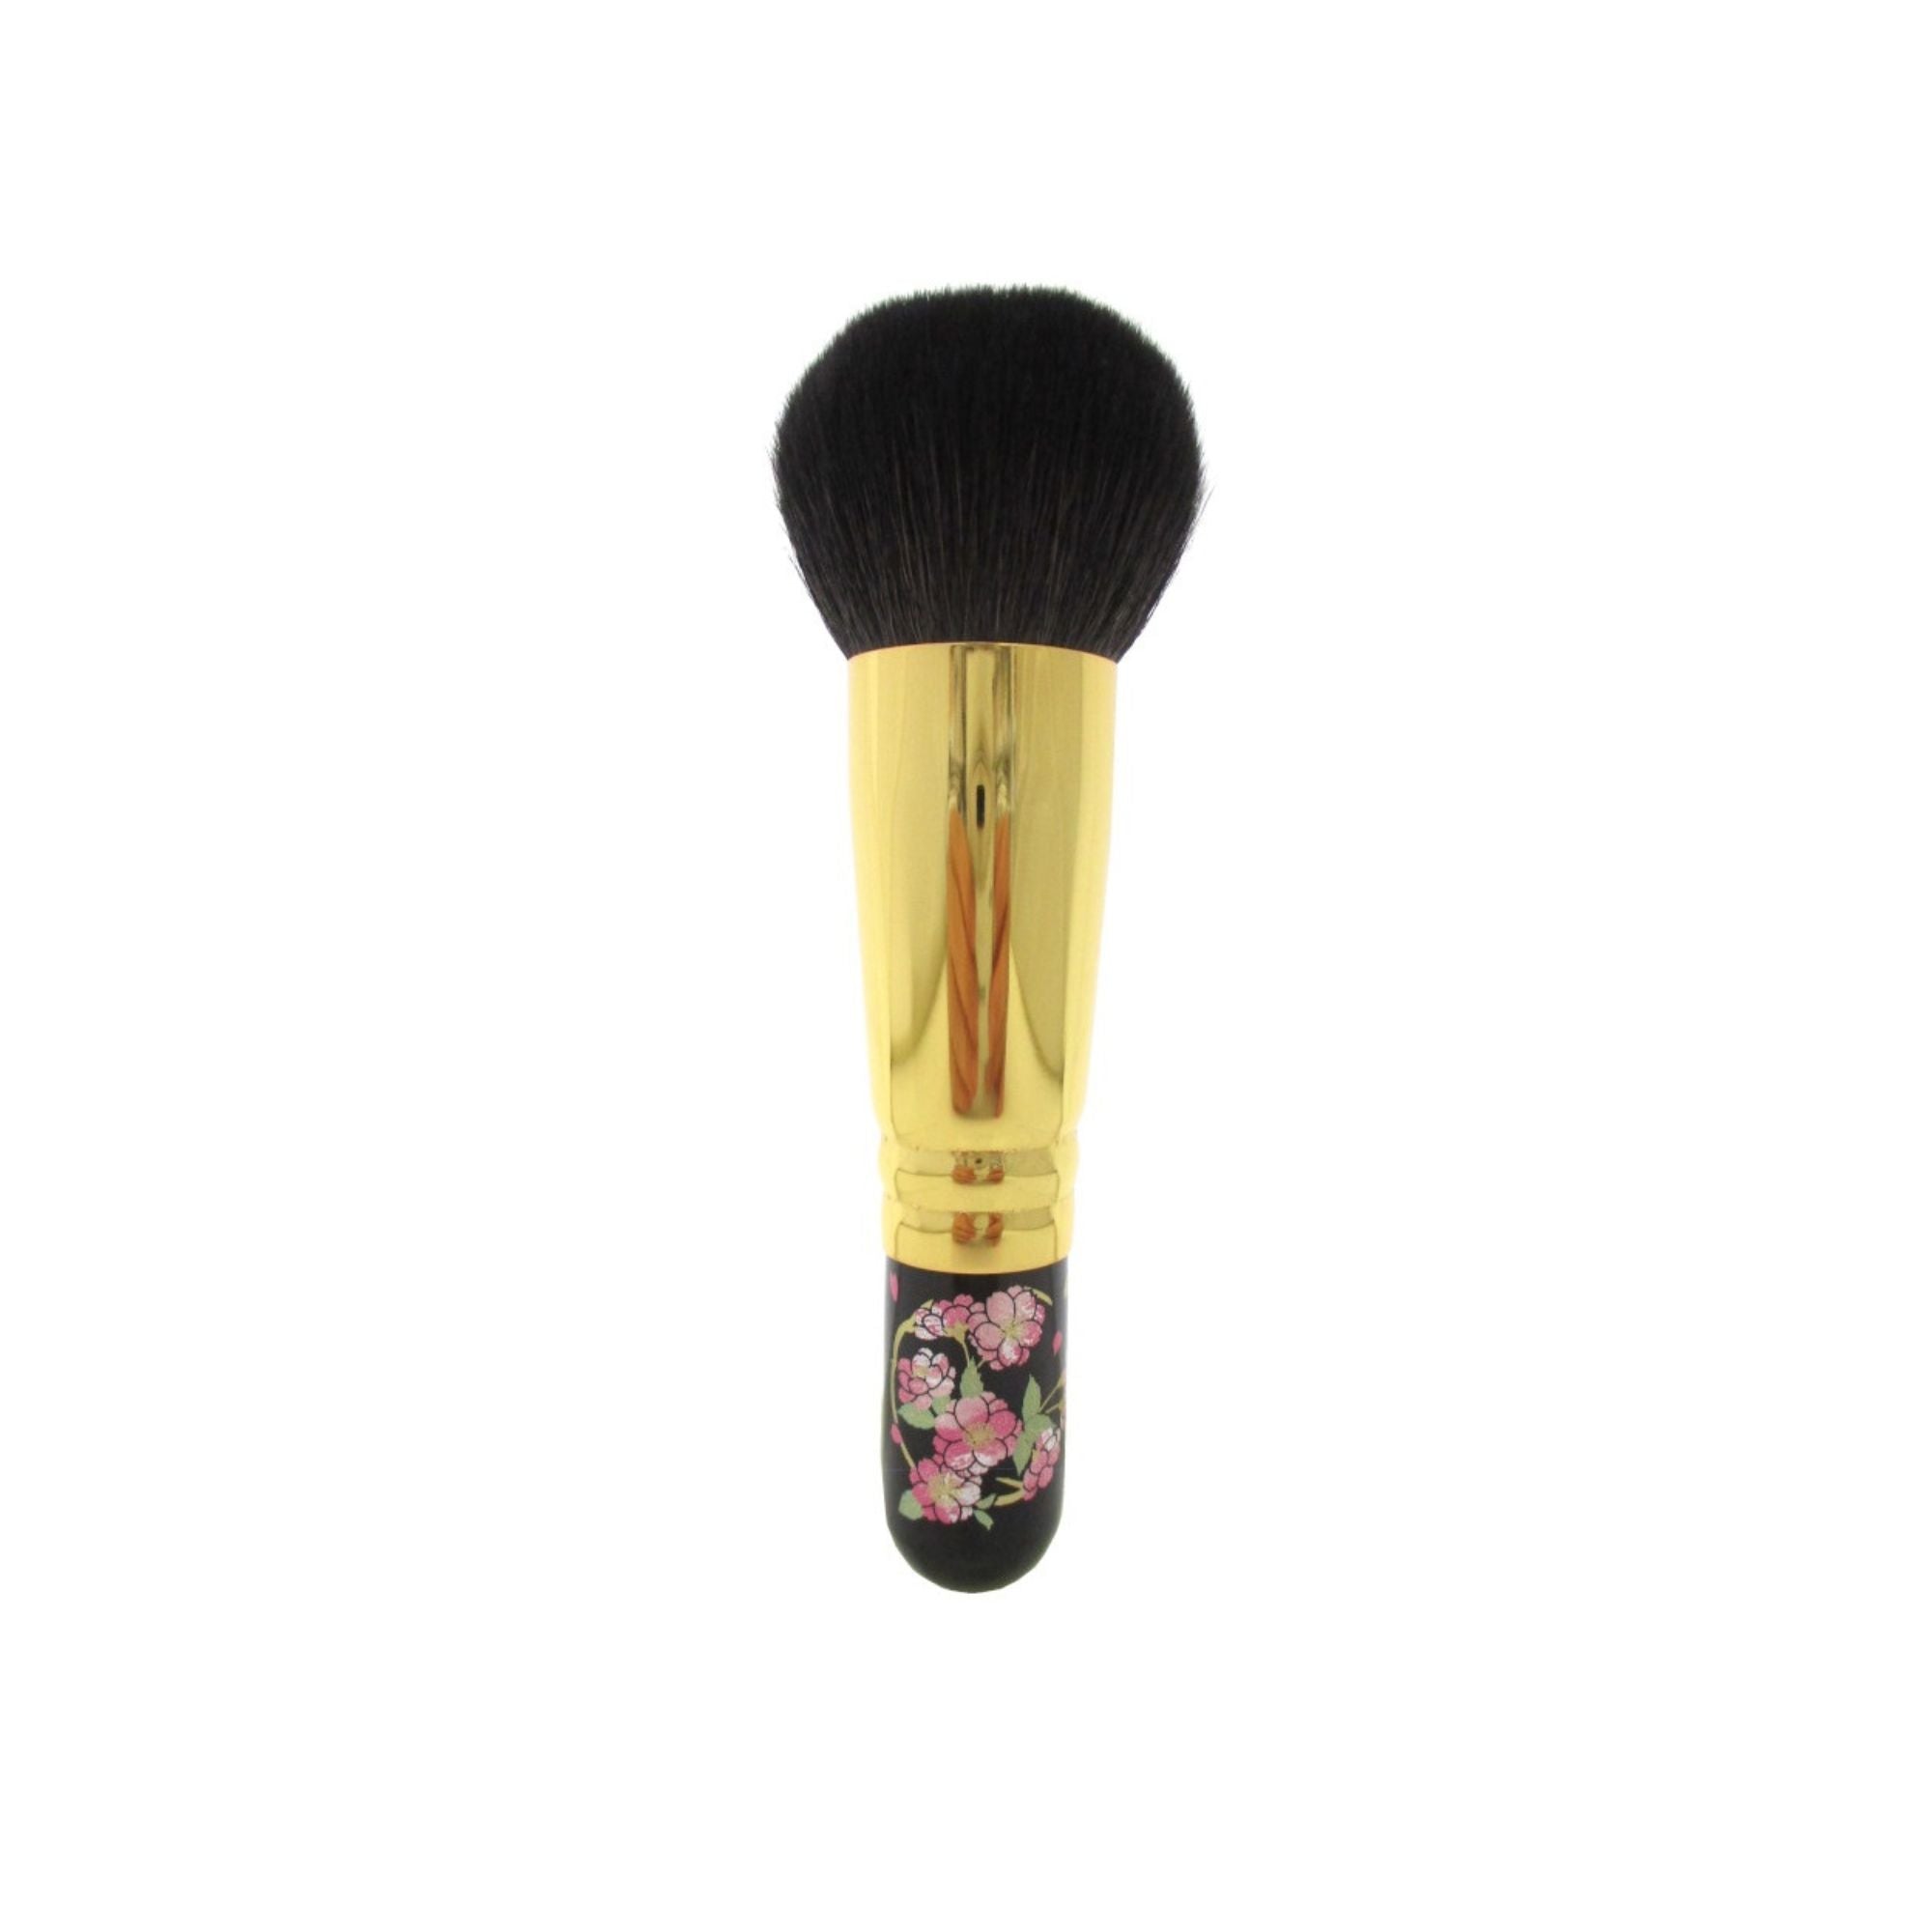 Eihodo WP PC-1 Puff Brush, Sakura Makie Designs - Fude Beauty, Japanese Makeup Brushes